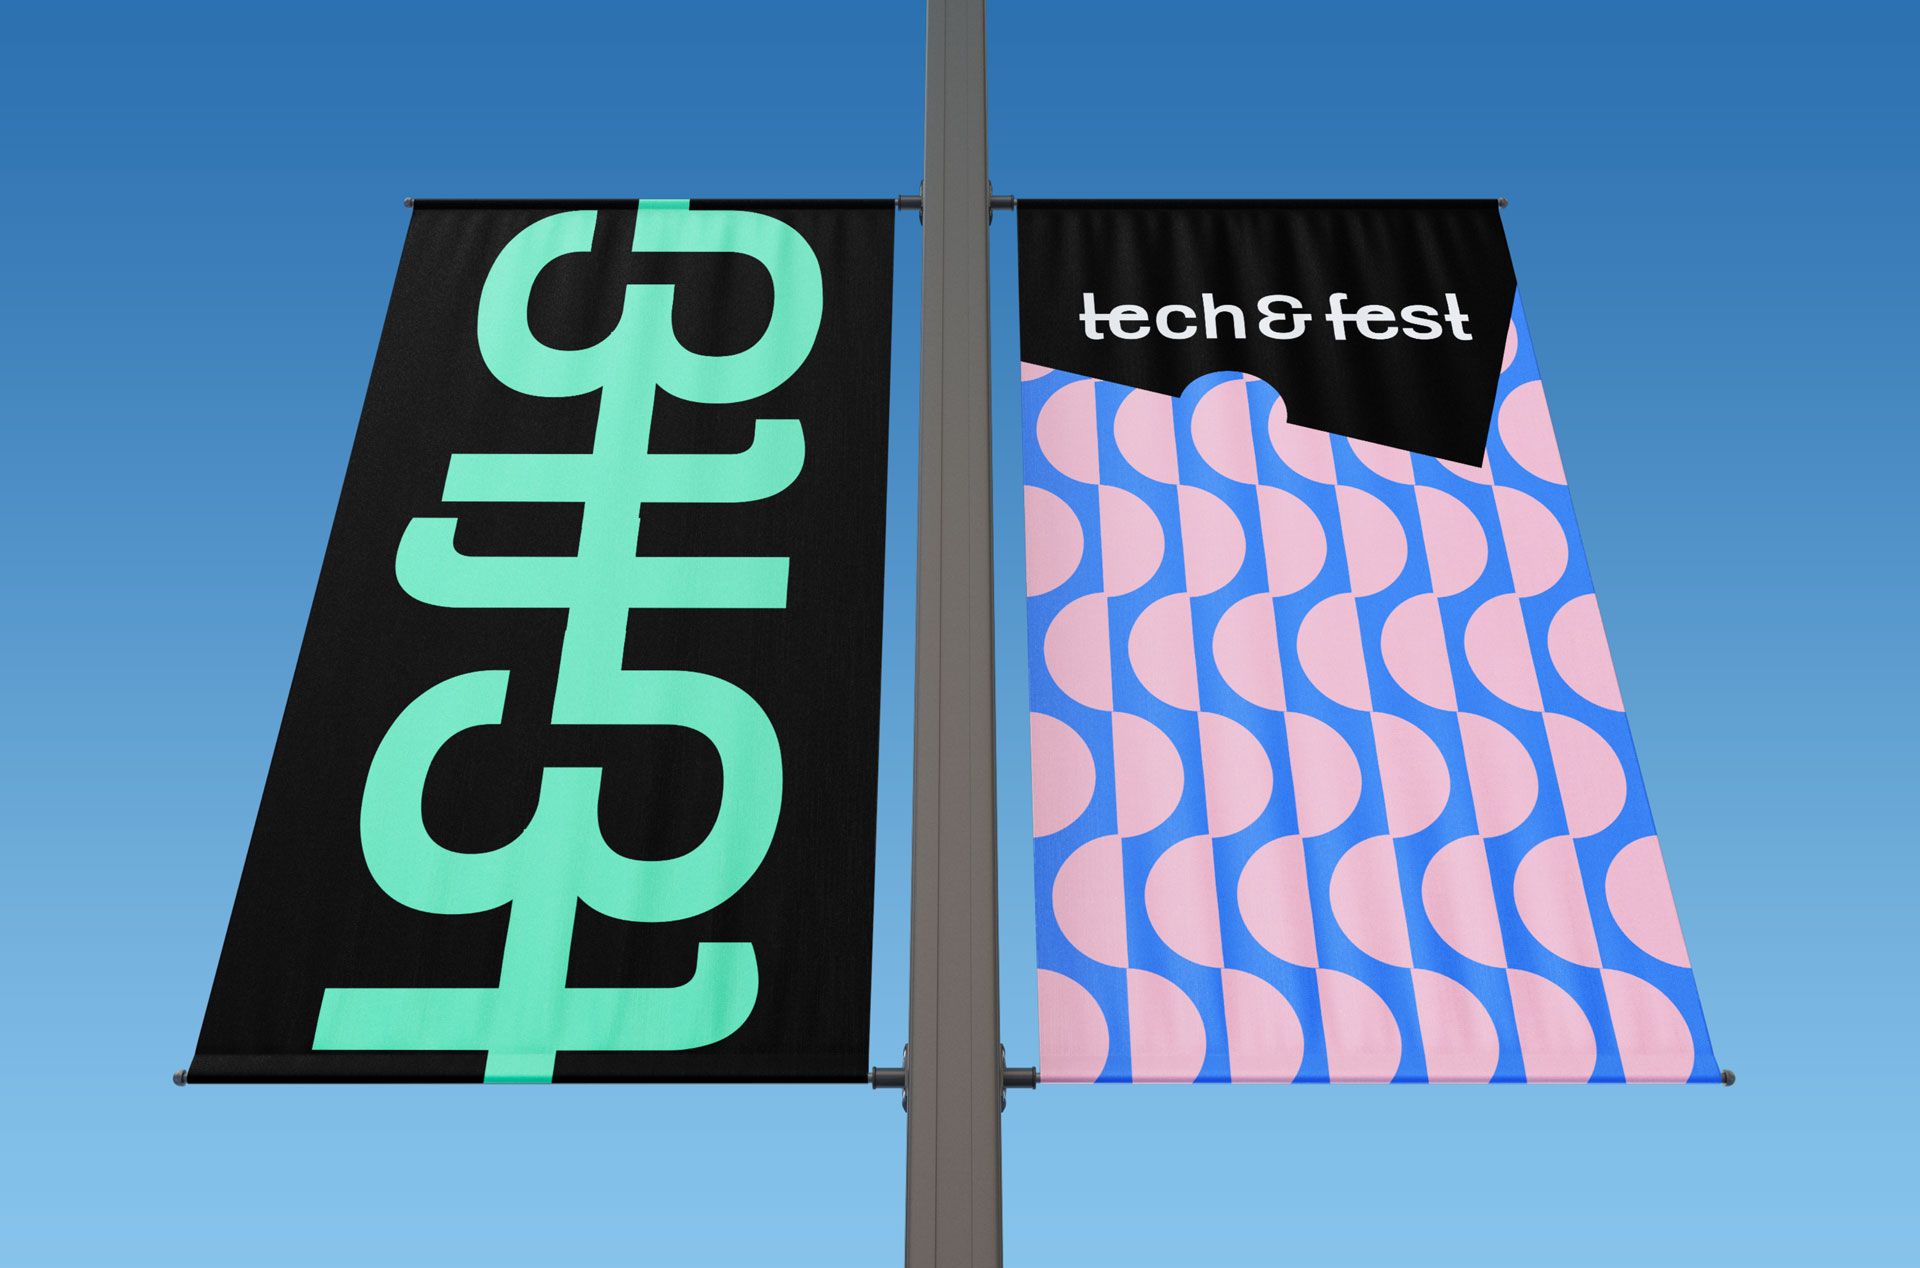 Tech&fest bannière